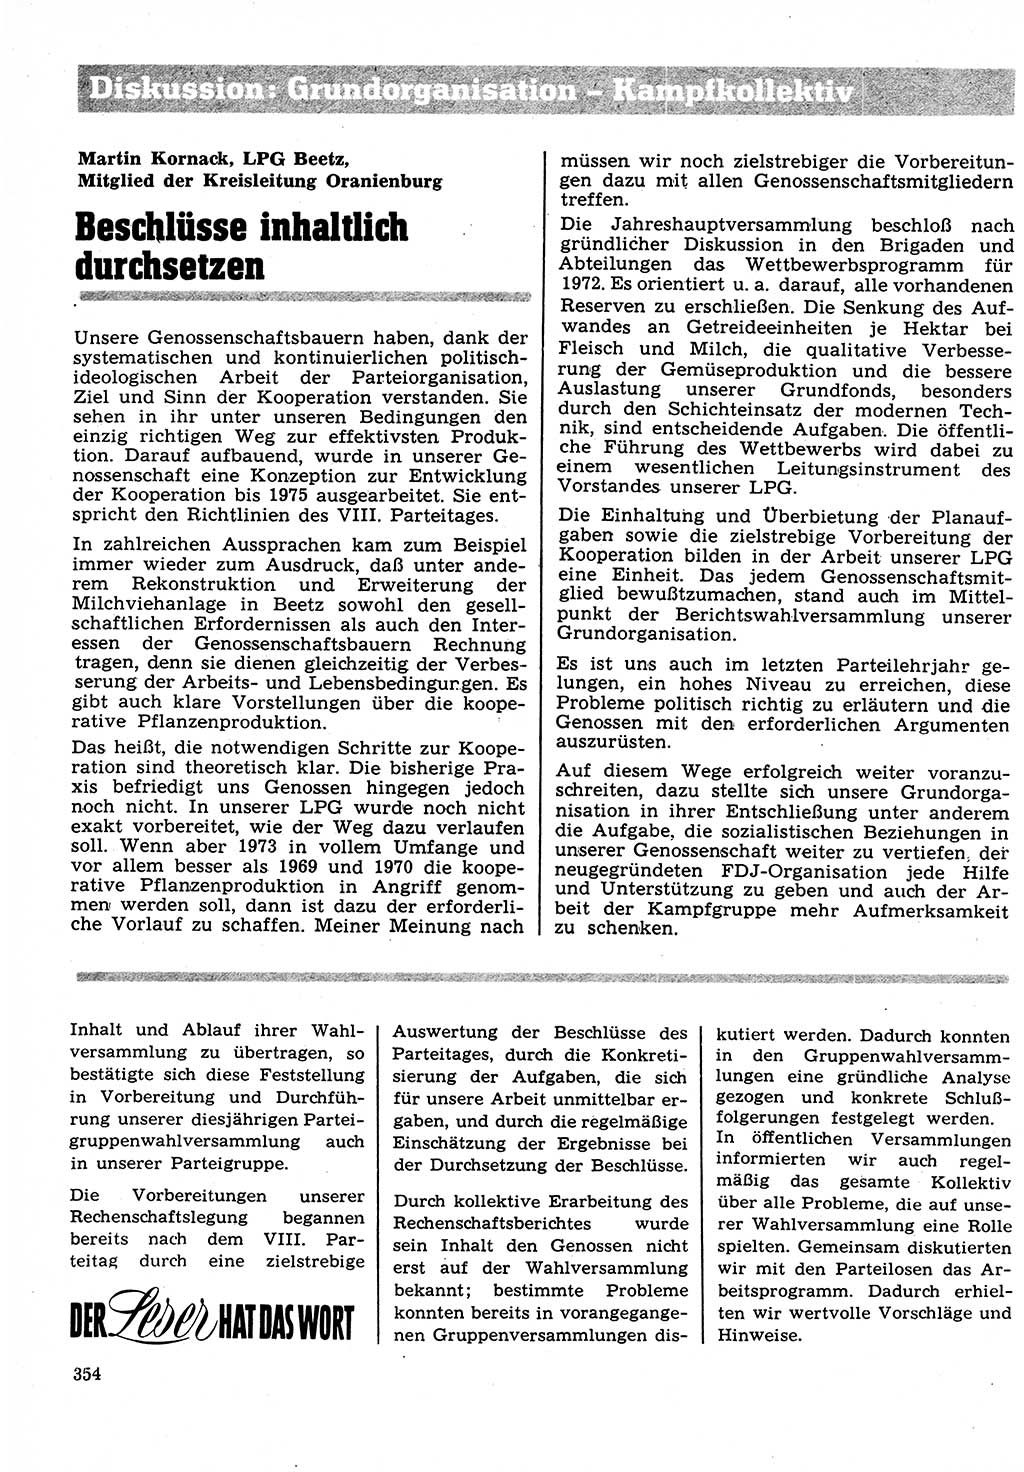 Neuer Weg (NW), Organ des Zentralkomitees (ZK) der SED (Sozialistische Einheitspartei Deutschlands) für Fragen des Parteilebens, 27. Jahrgang [Deutsche Demokratische Republik (DDR)] 1972, Seite 354 (NW ZK SED DDR 1972, S. 354)